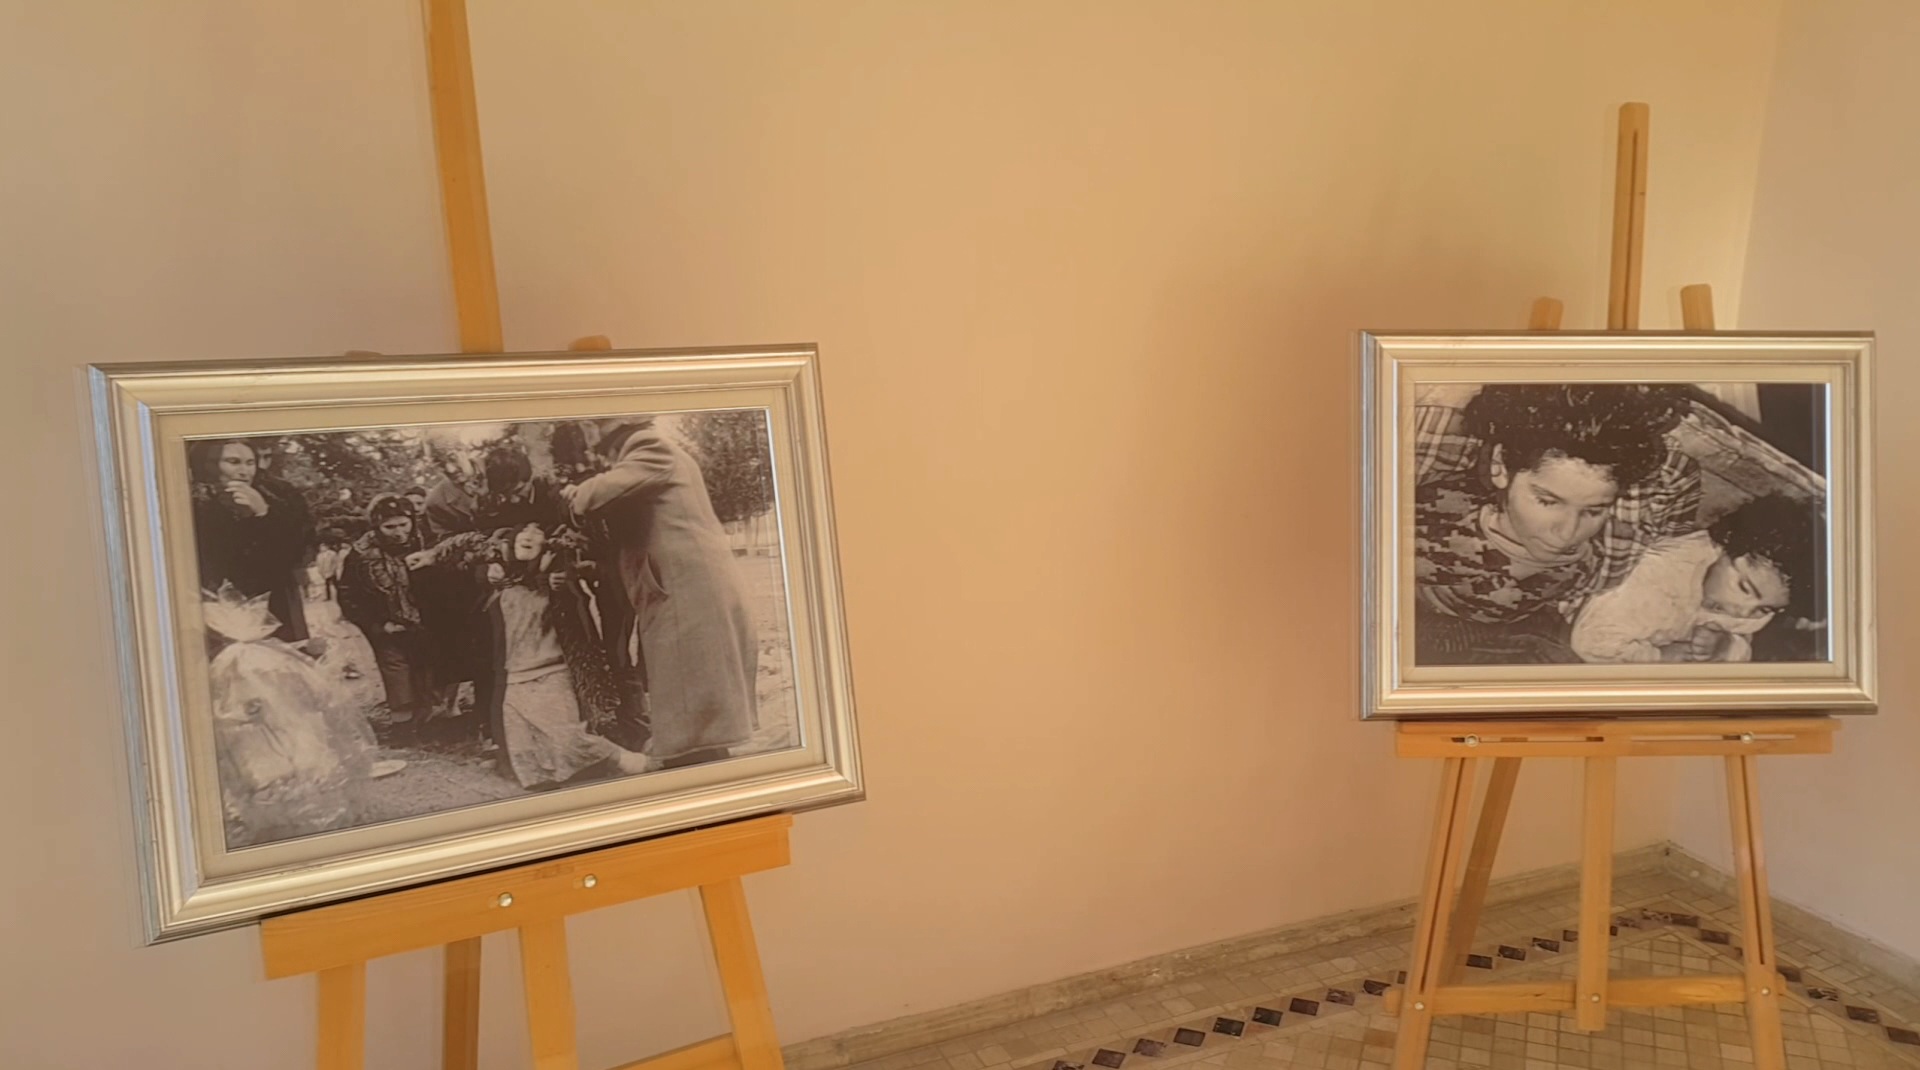 Hocalı soykırımının 28. Yıl dönümü münasebetiyle, ‘TADİV’ binasında 25 Şubat ile 2 Mart 2020 tarihleri arasında Fotoğraf sergisi gerçekleşiyor.